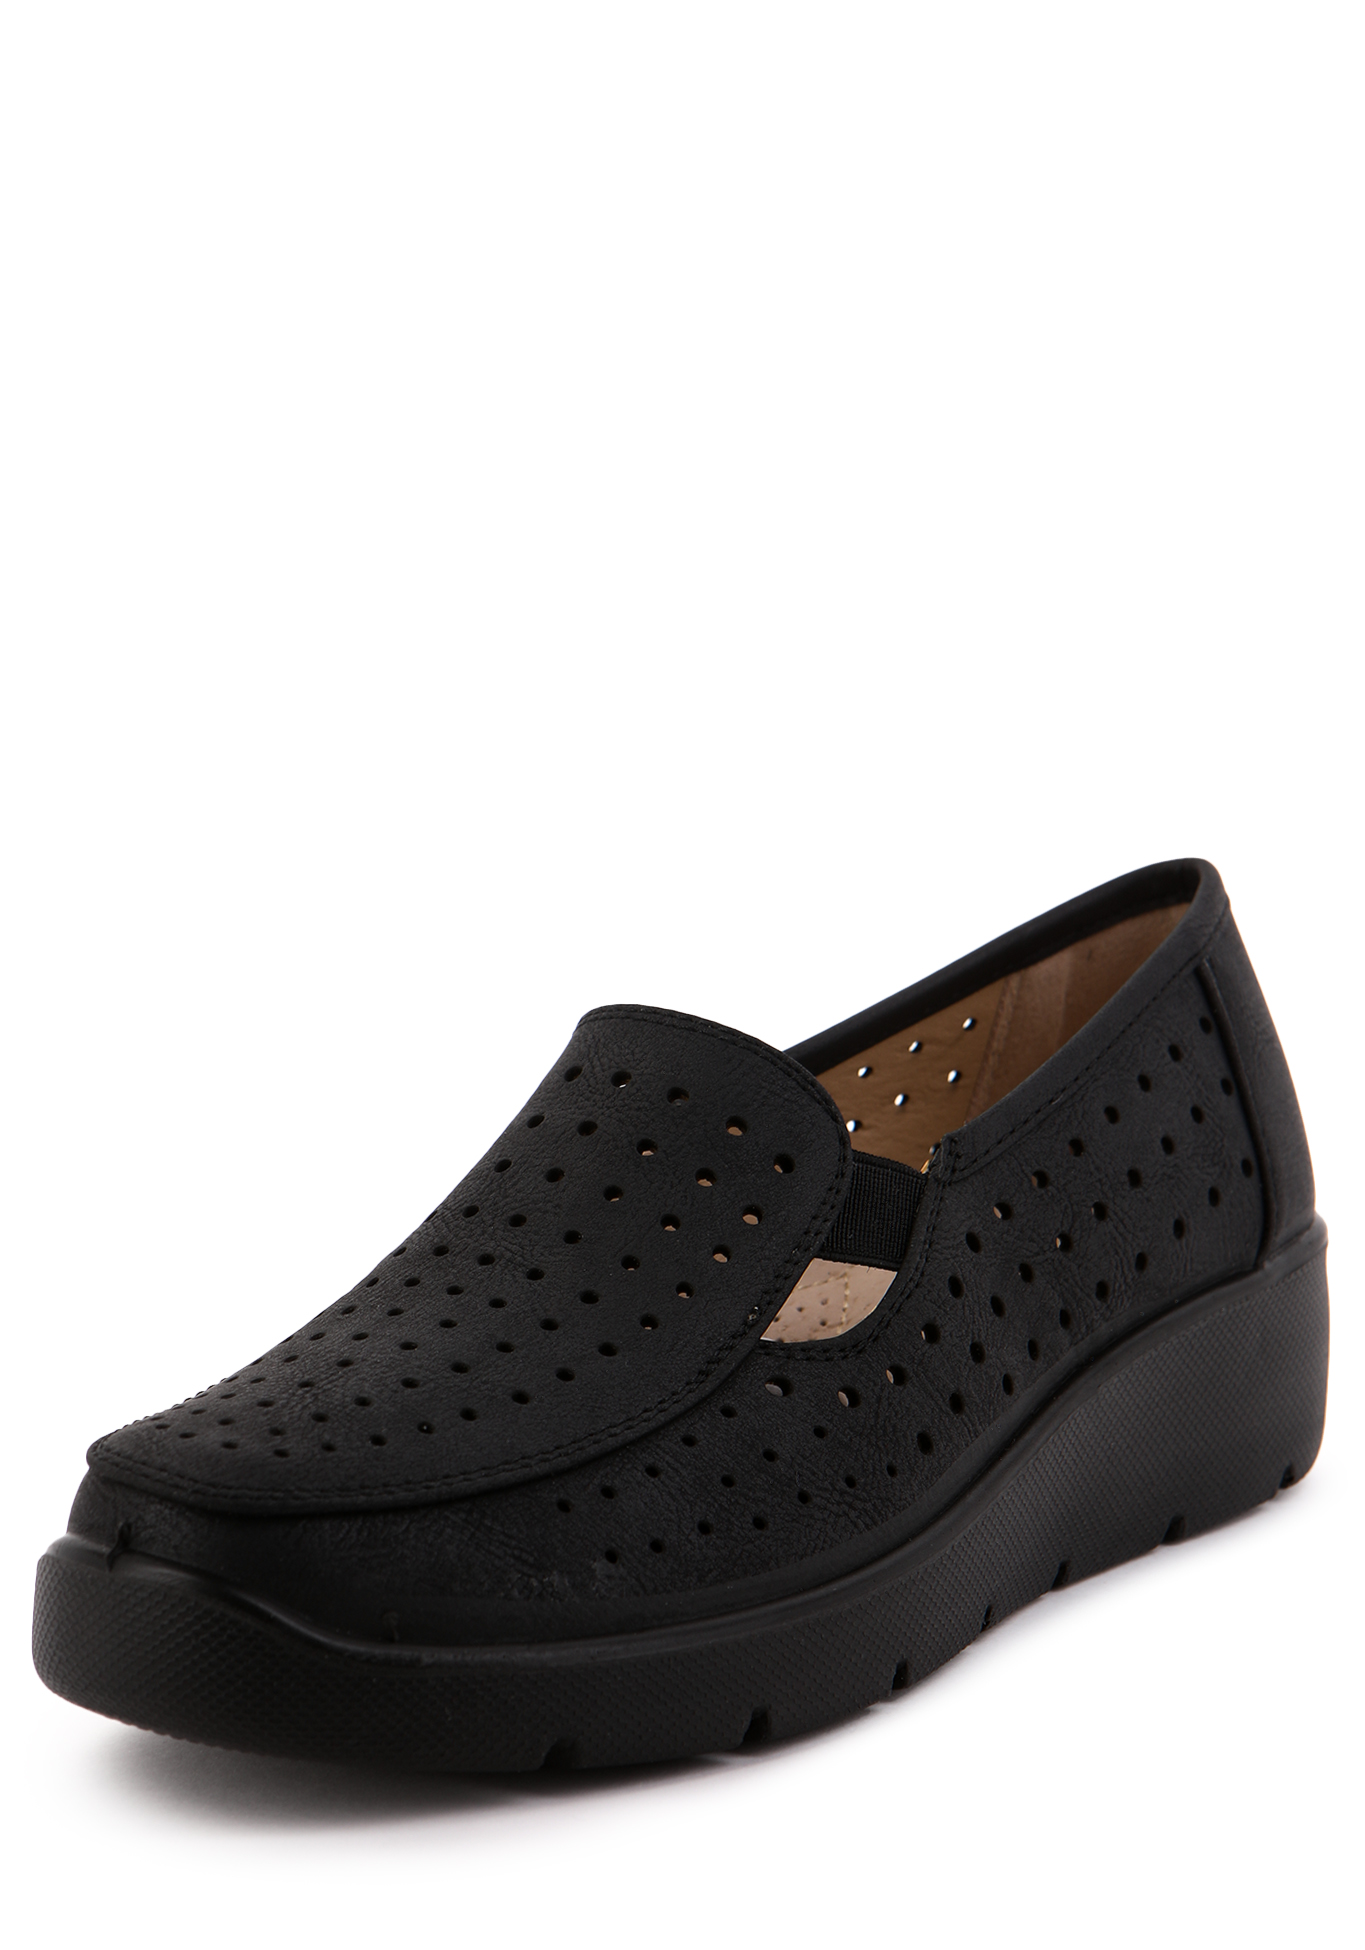 Туфли летние женские "Рабиана" Mon Ami, размер 37, цвет черный - фото 1